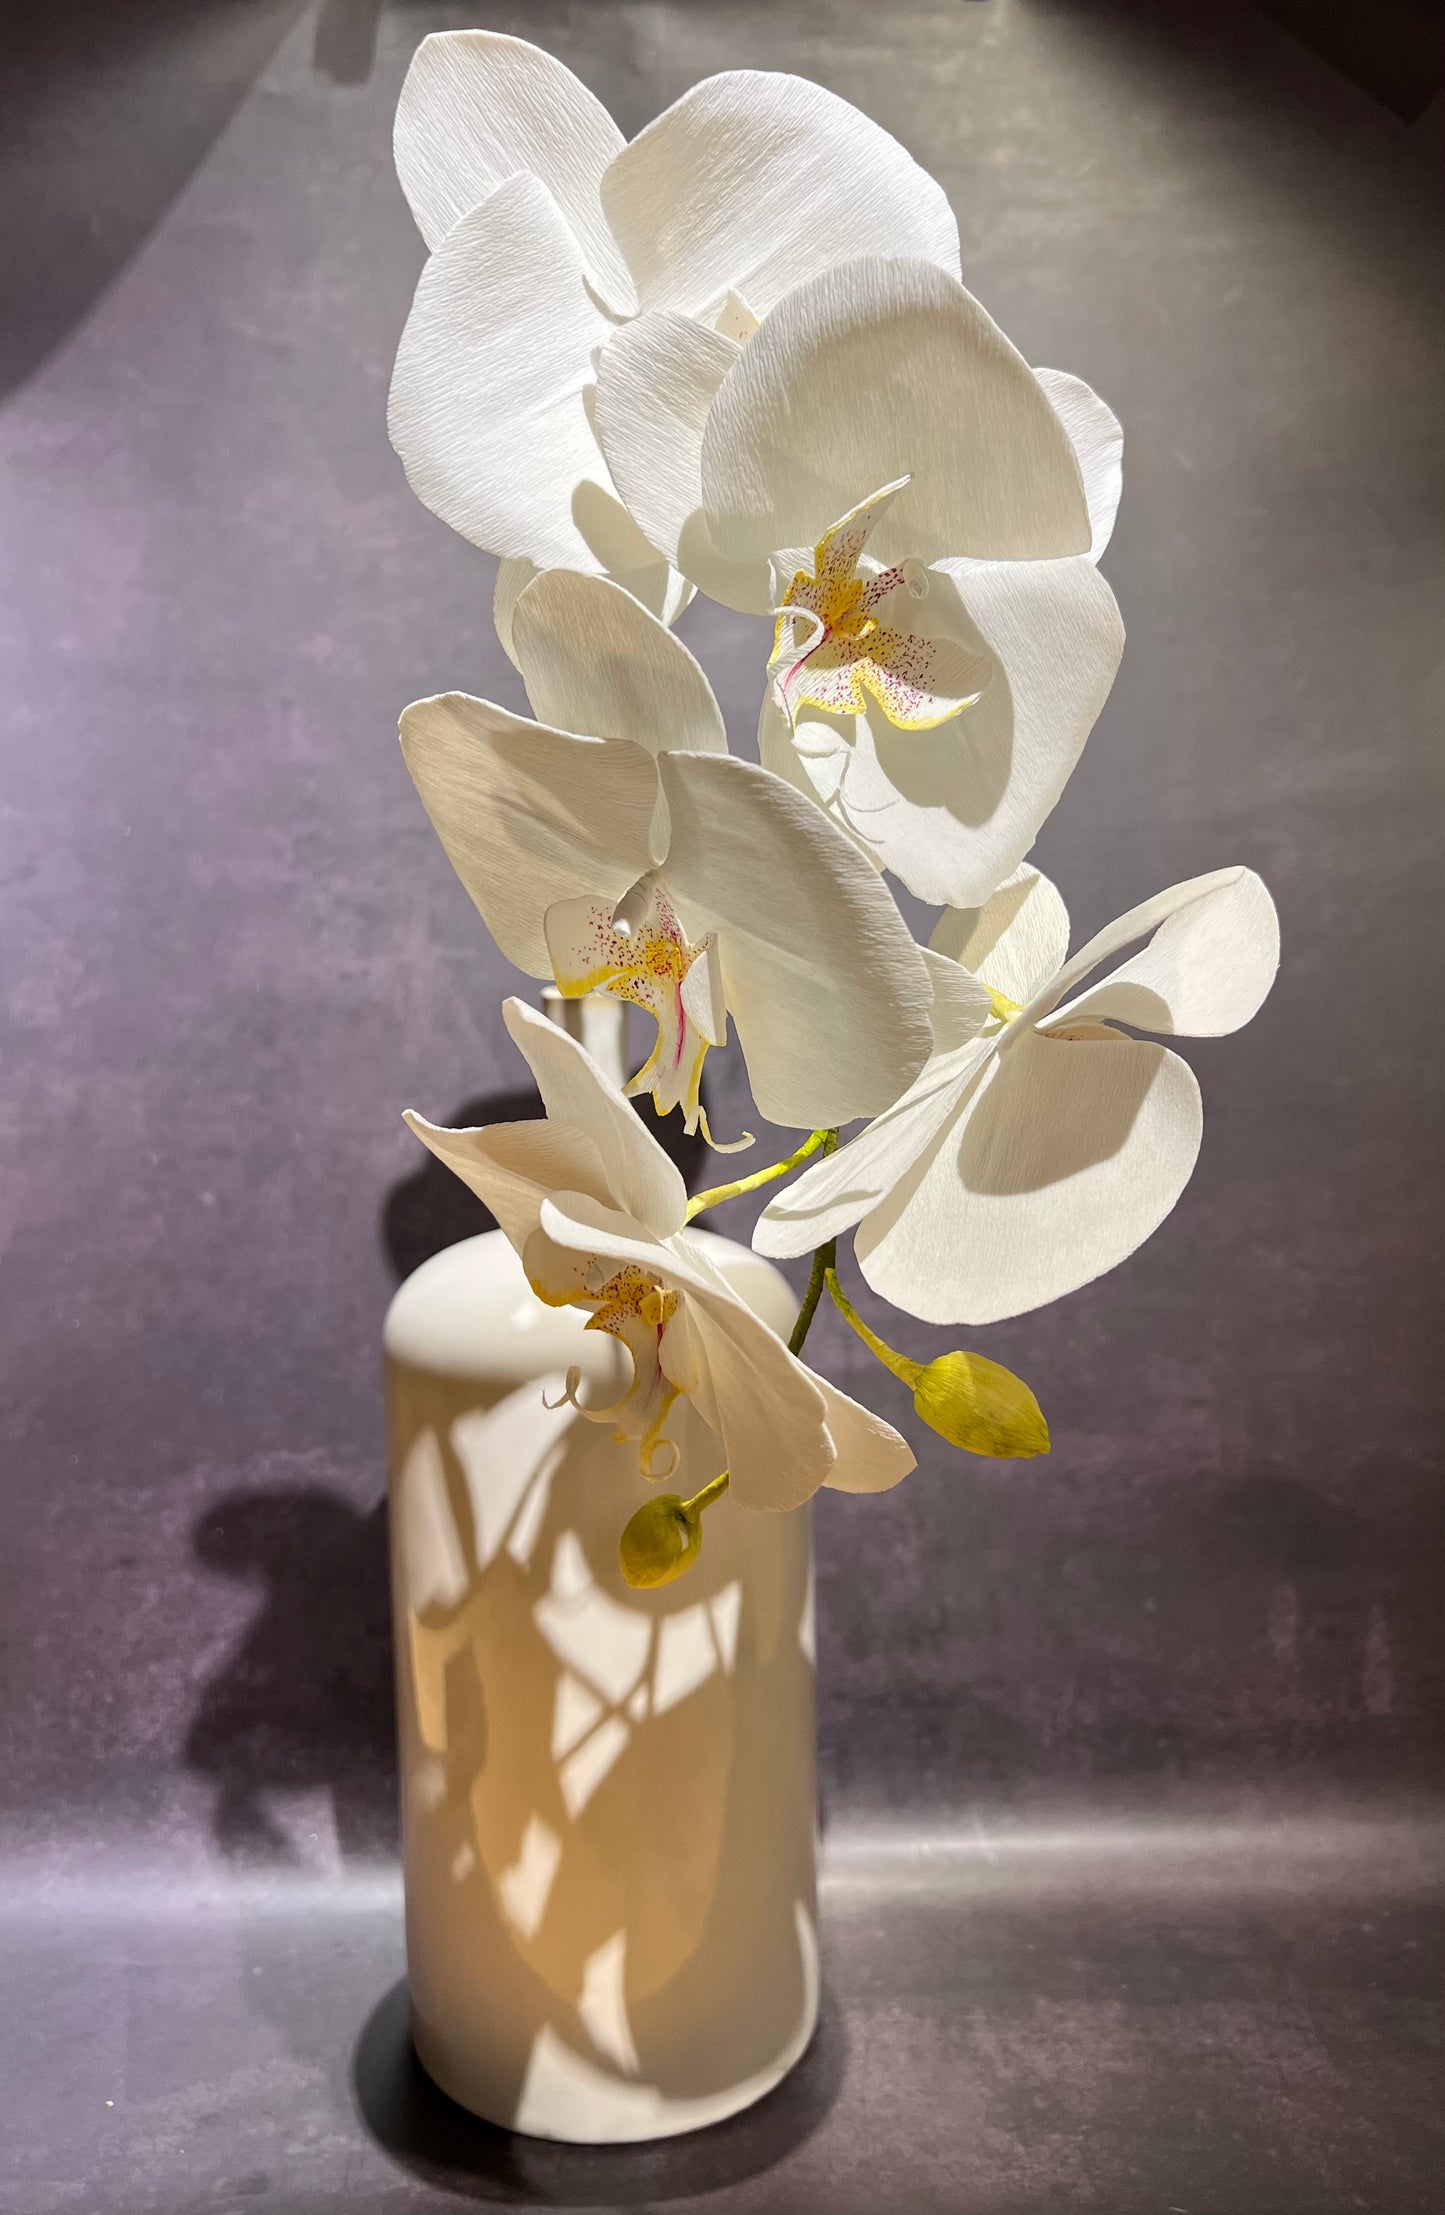 Phalaenopsis Orchid stem in vase.